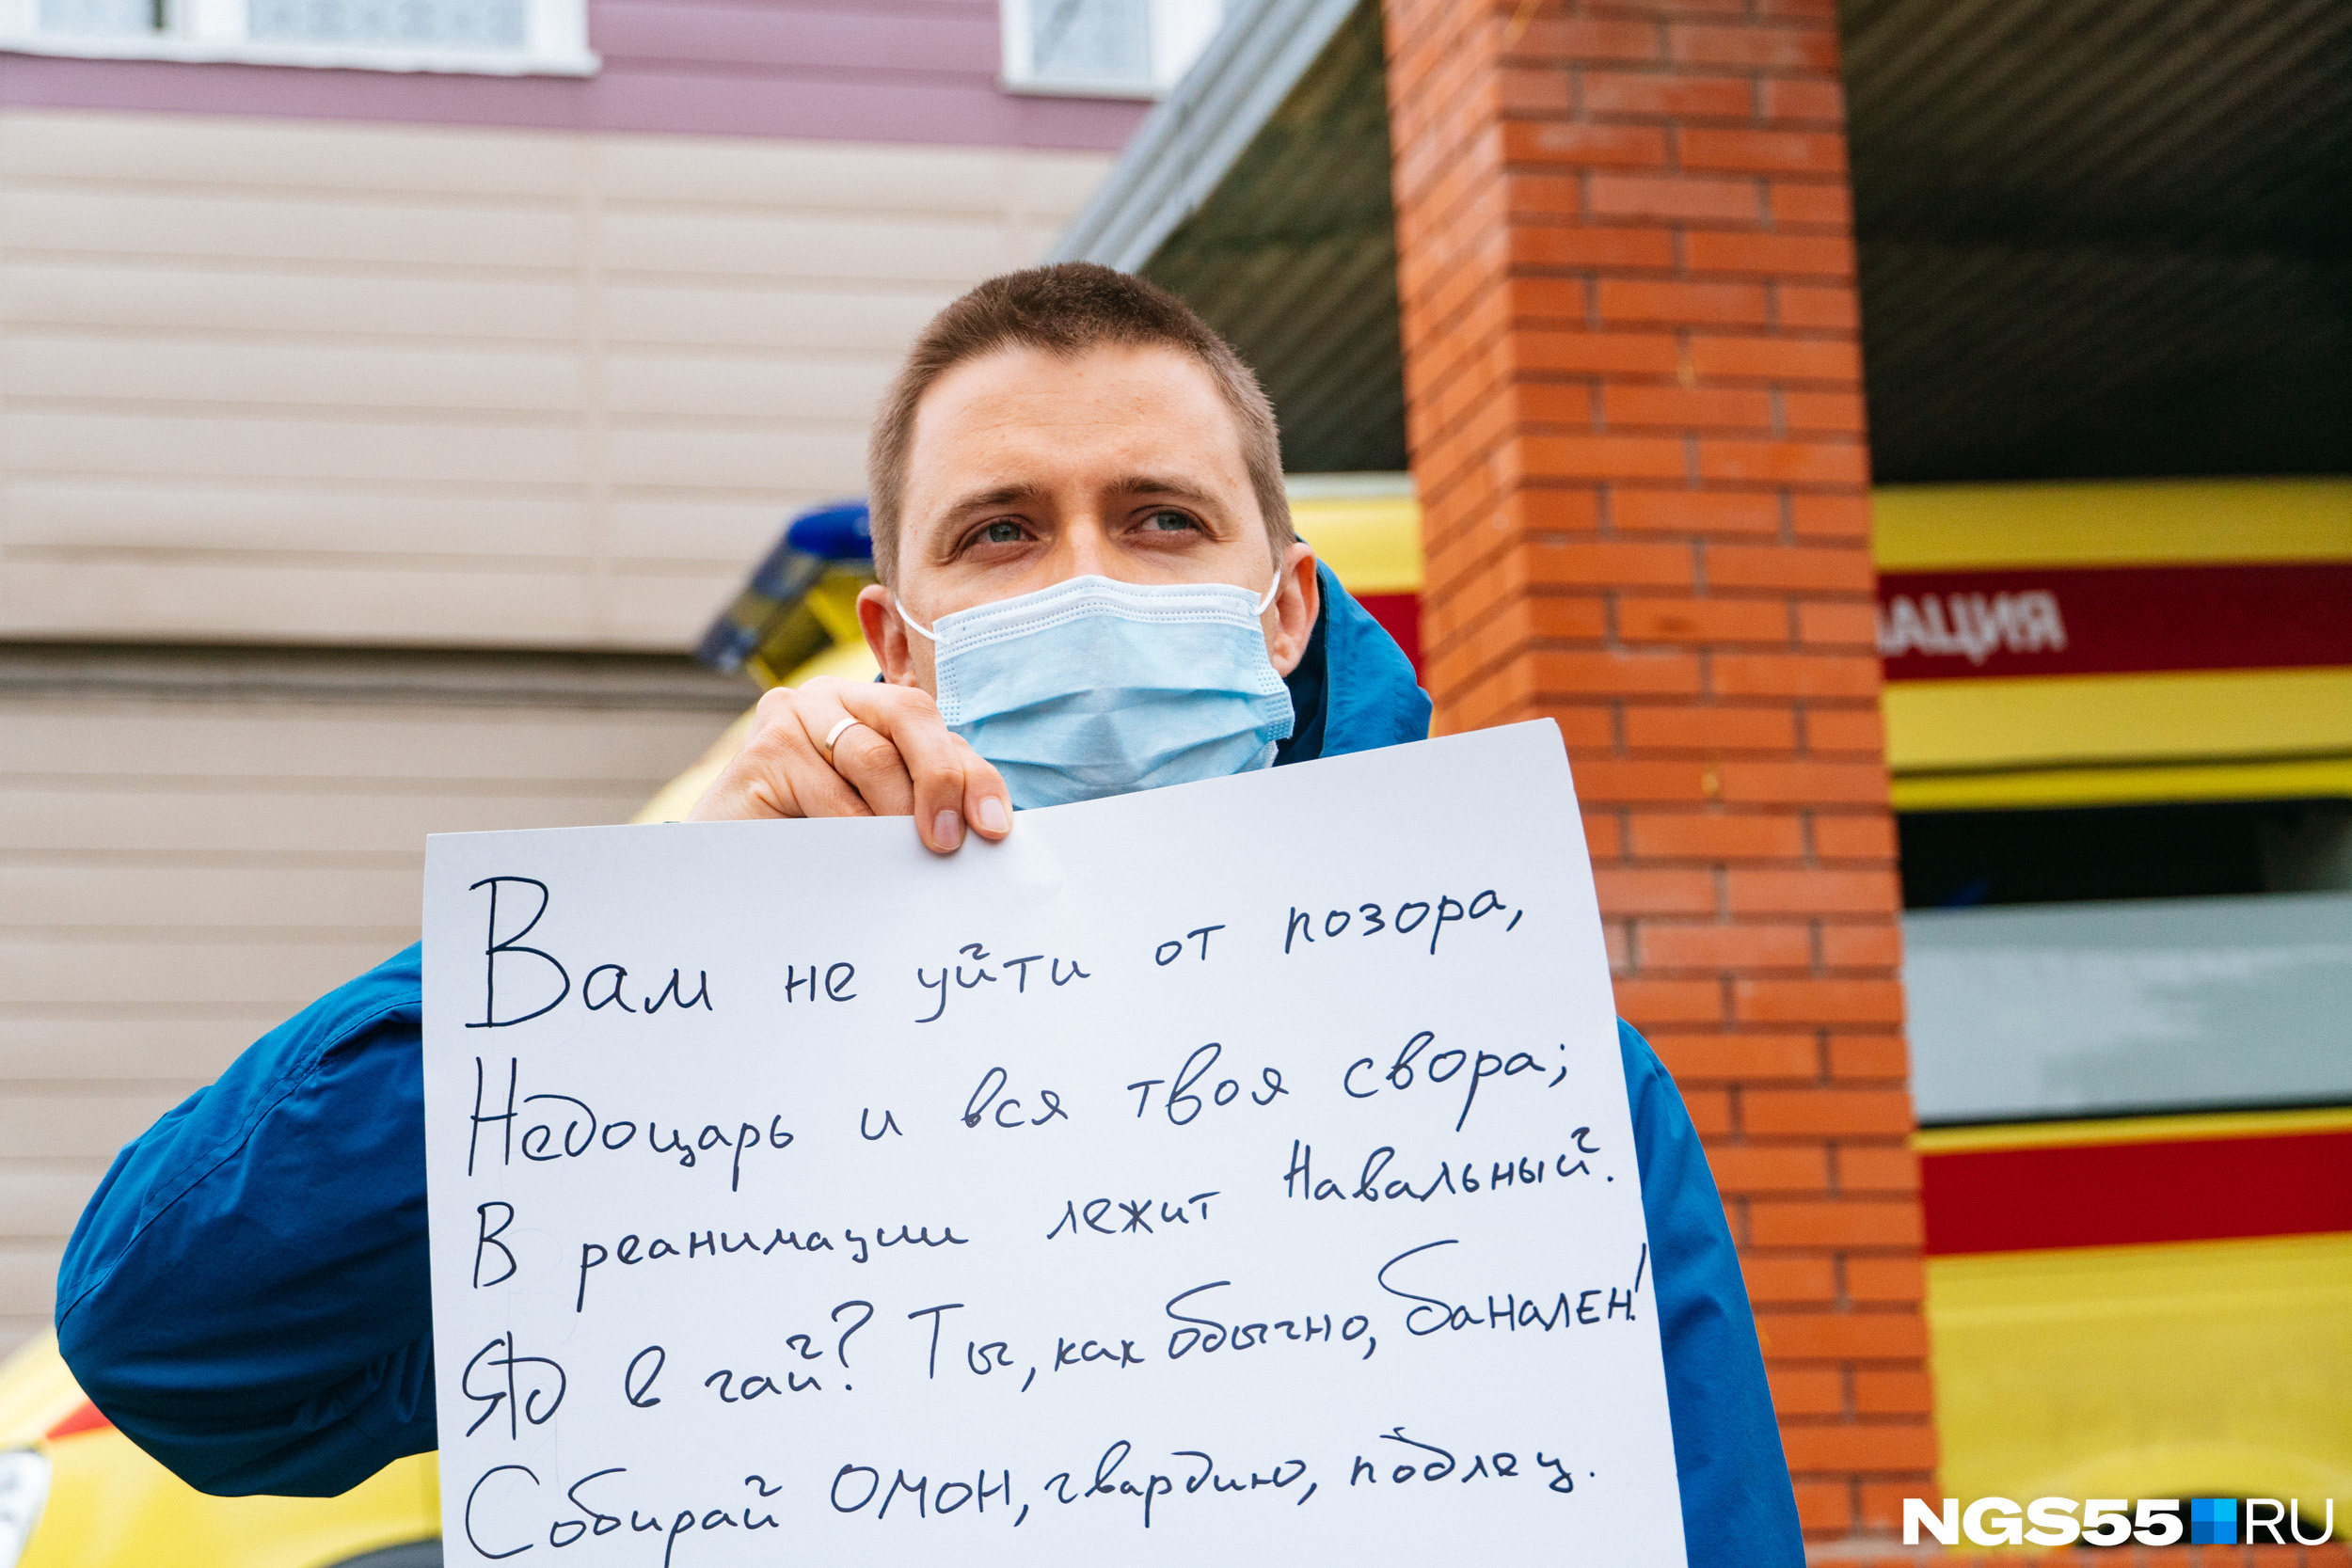 Омич Павел вышел на одиночный пикет возле больницы — он поддерживает версию, что Навального отравили намеренно